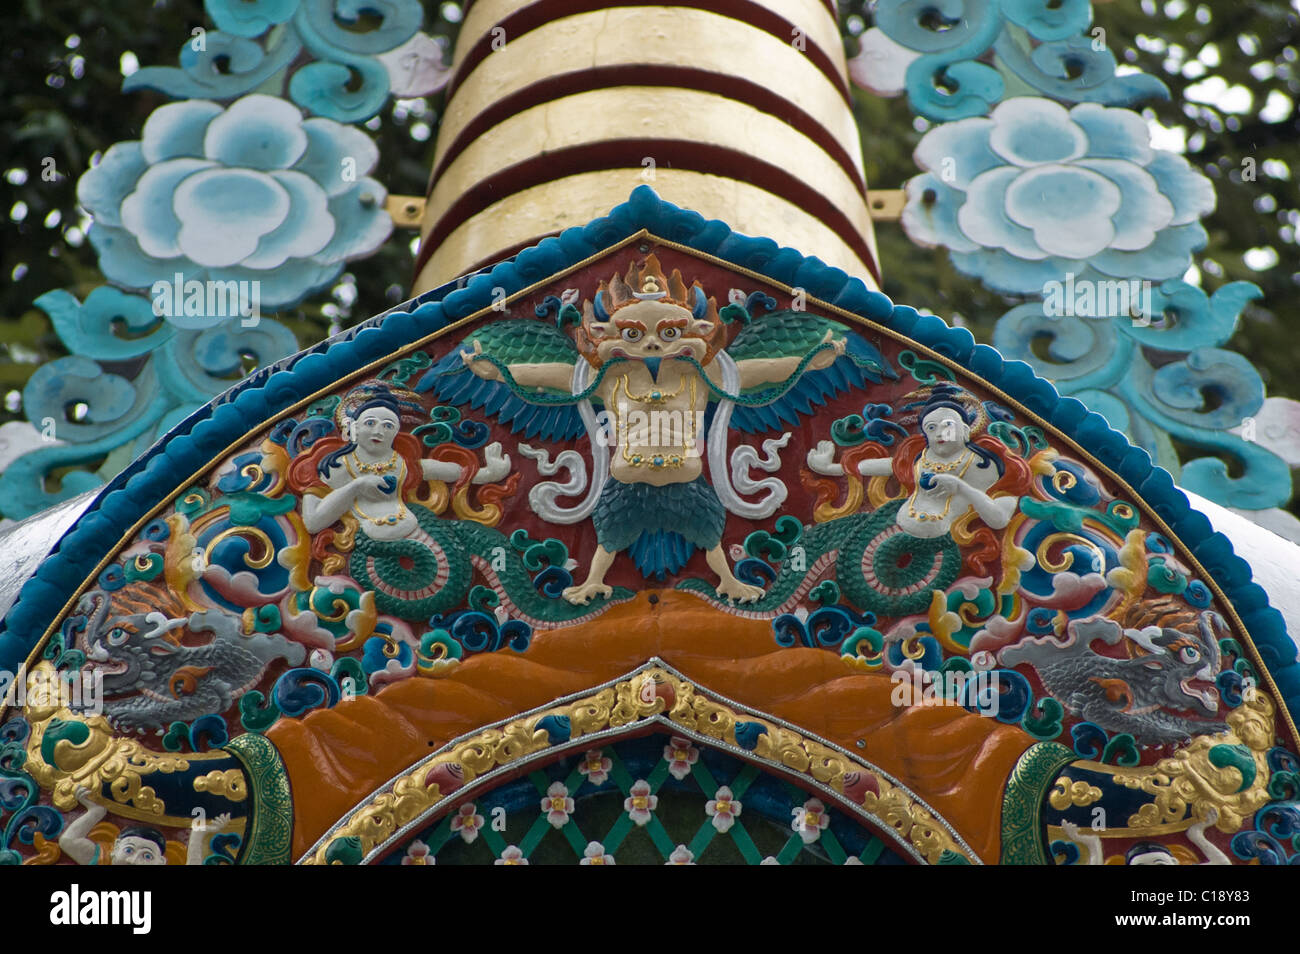 Dettagli sul tibetano tempio buddista in Dharamsala Foto Stock